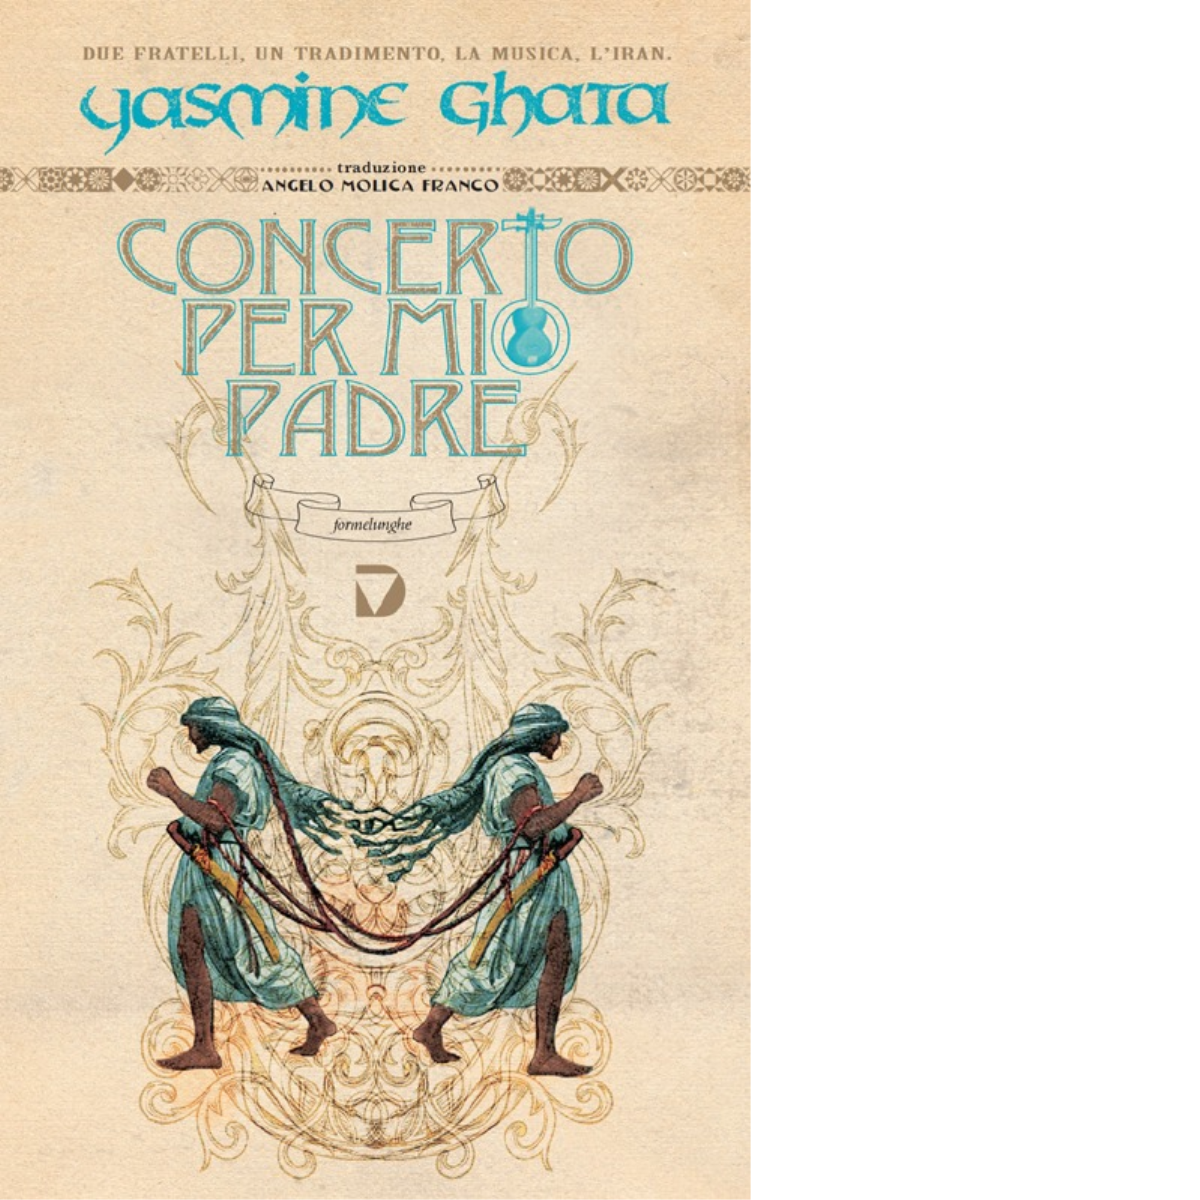  Concerto per mio padre di Yasmine Ghata - Del vecchio, 2013